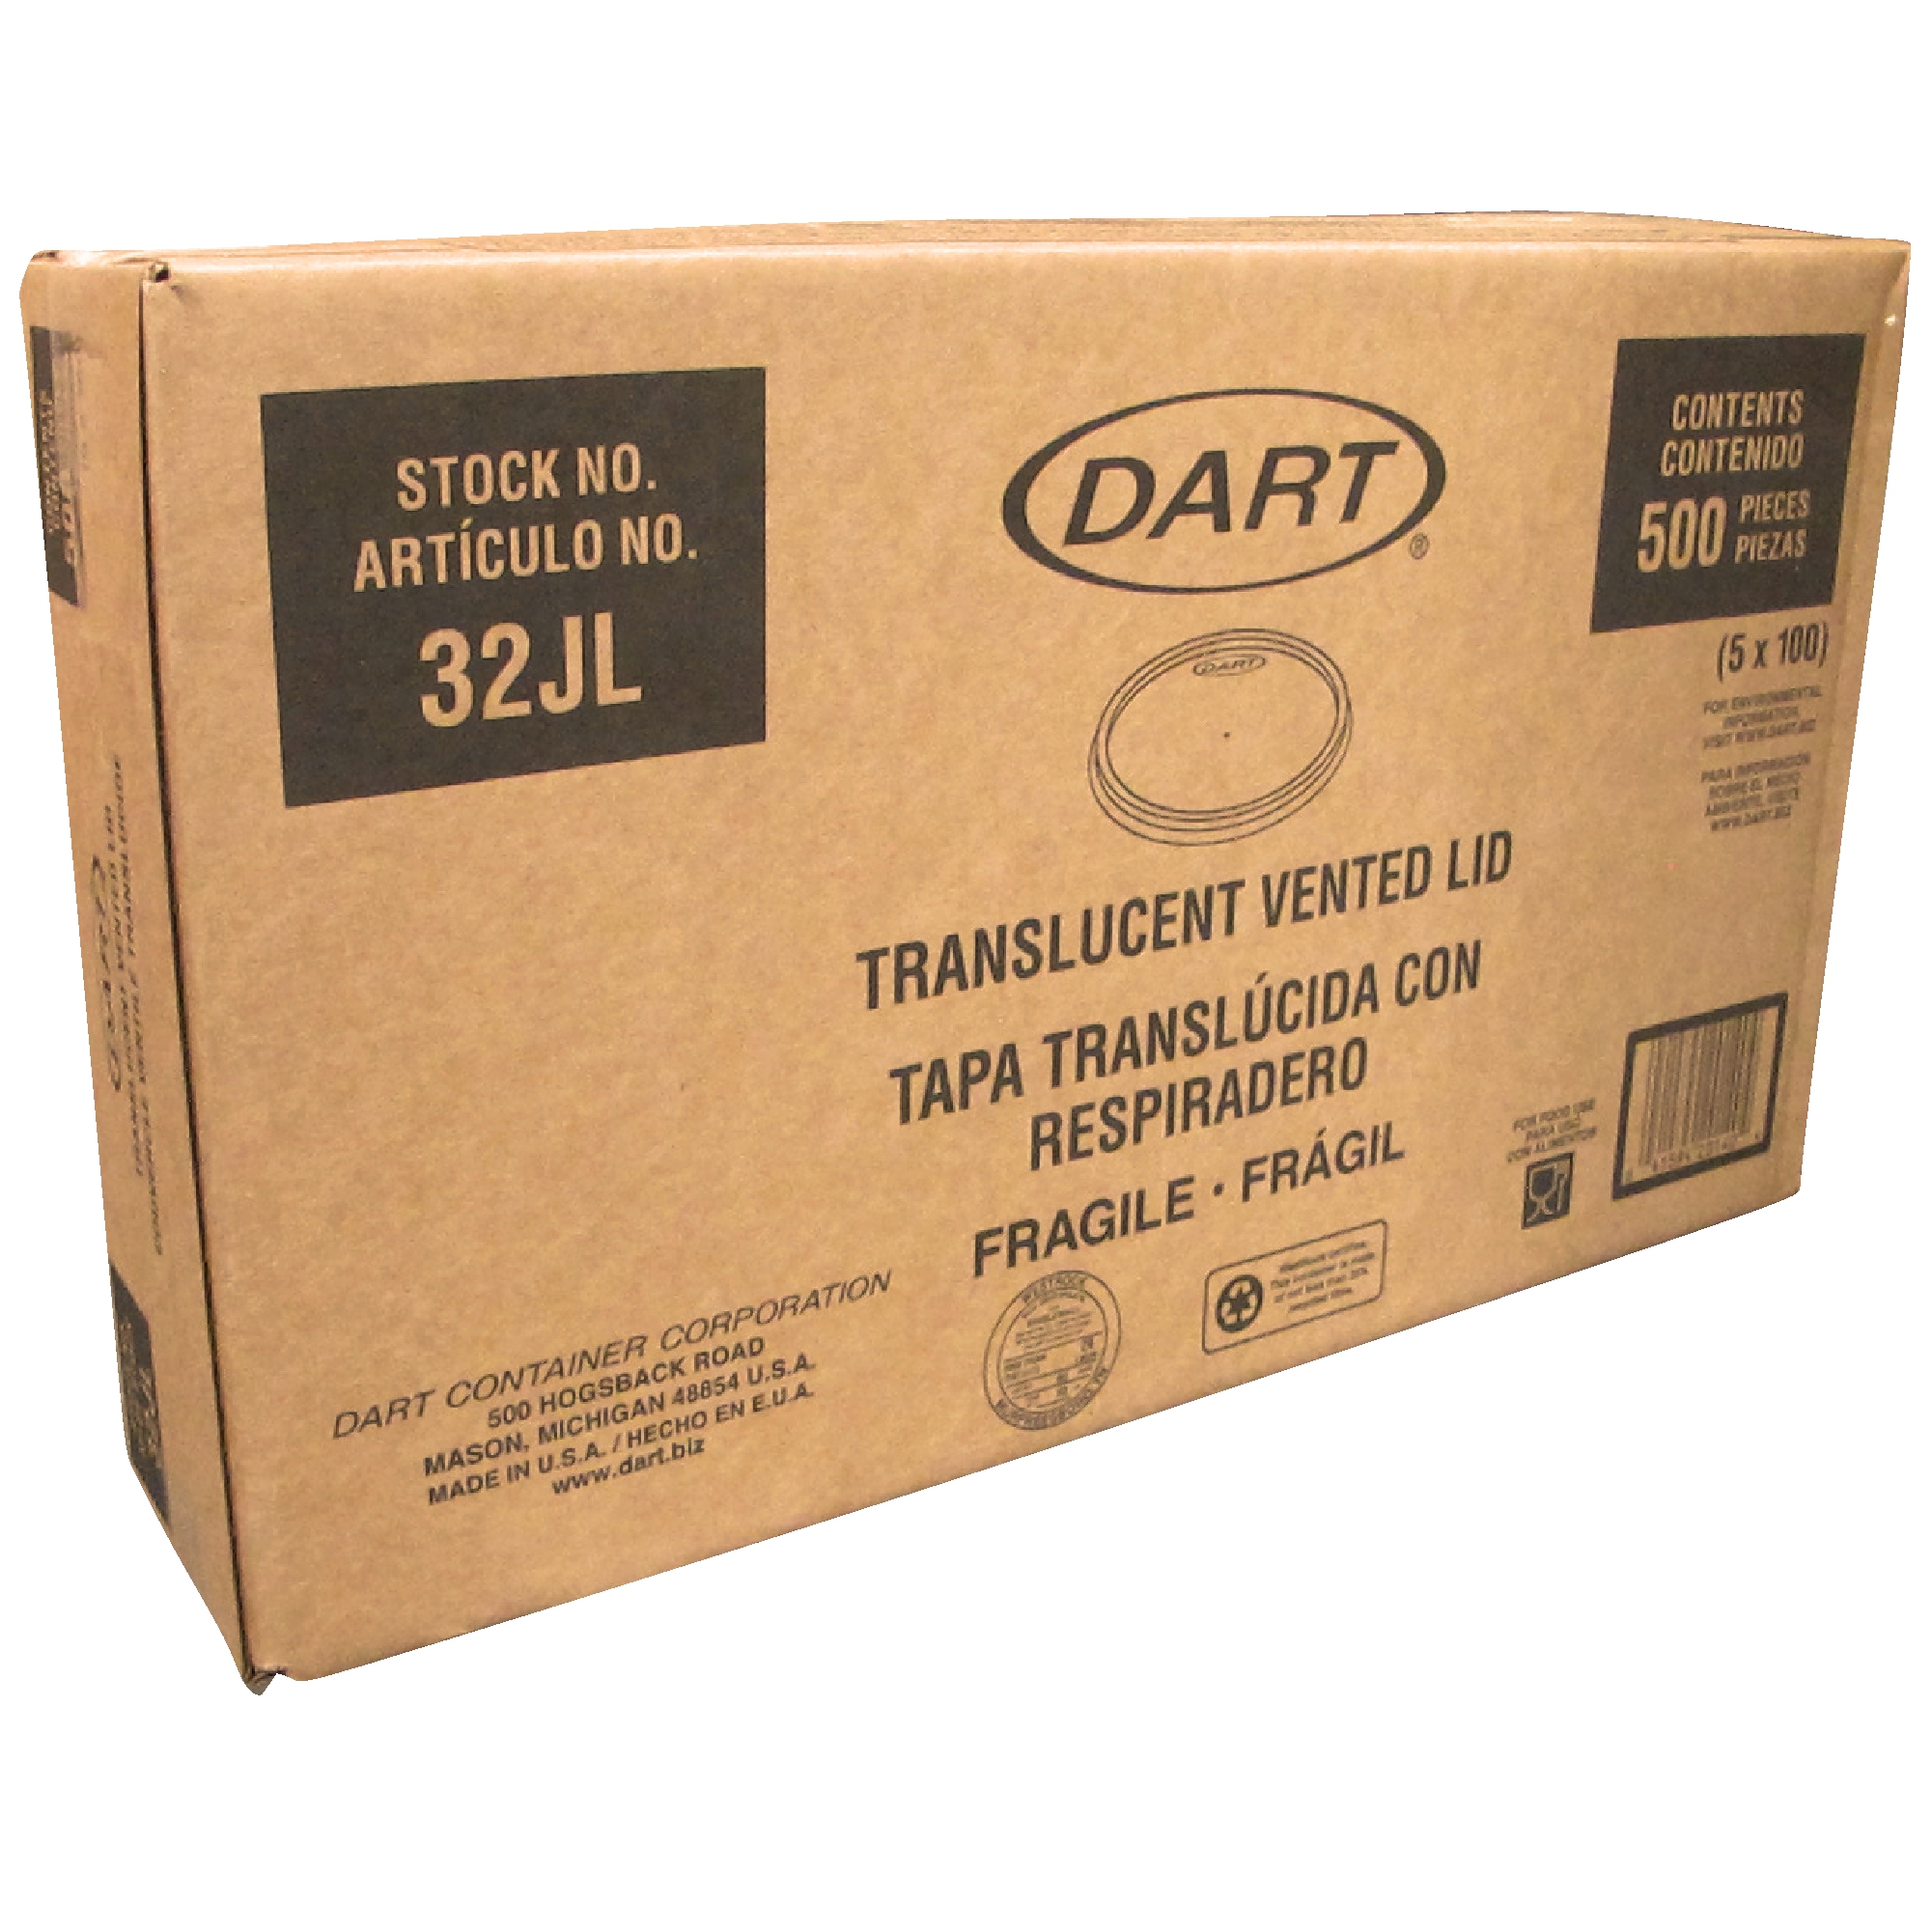 Dart 32JL tapa transparente con respiradero, caja con 500 piezas en 5 paquetes